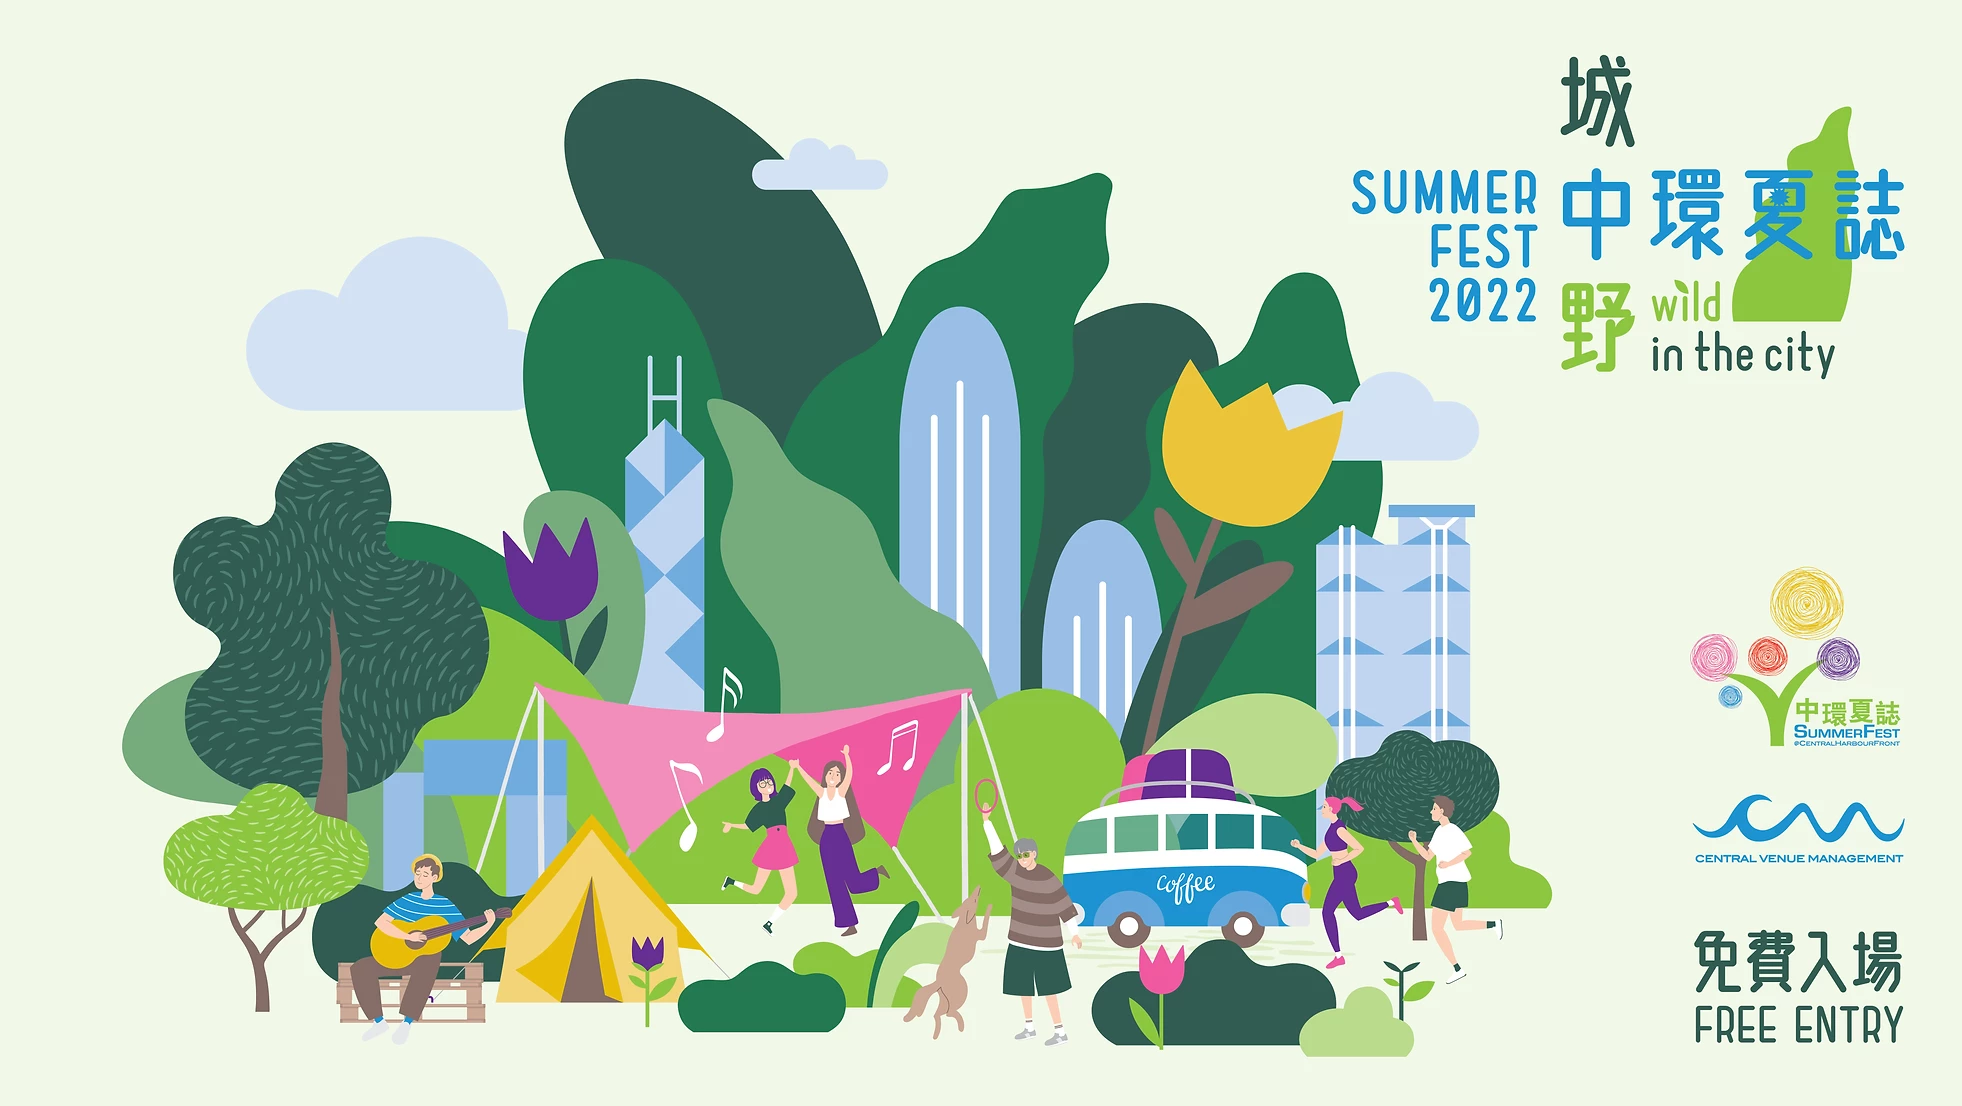 SummerFest Hong Kong 2022